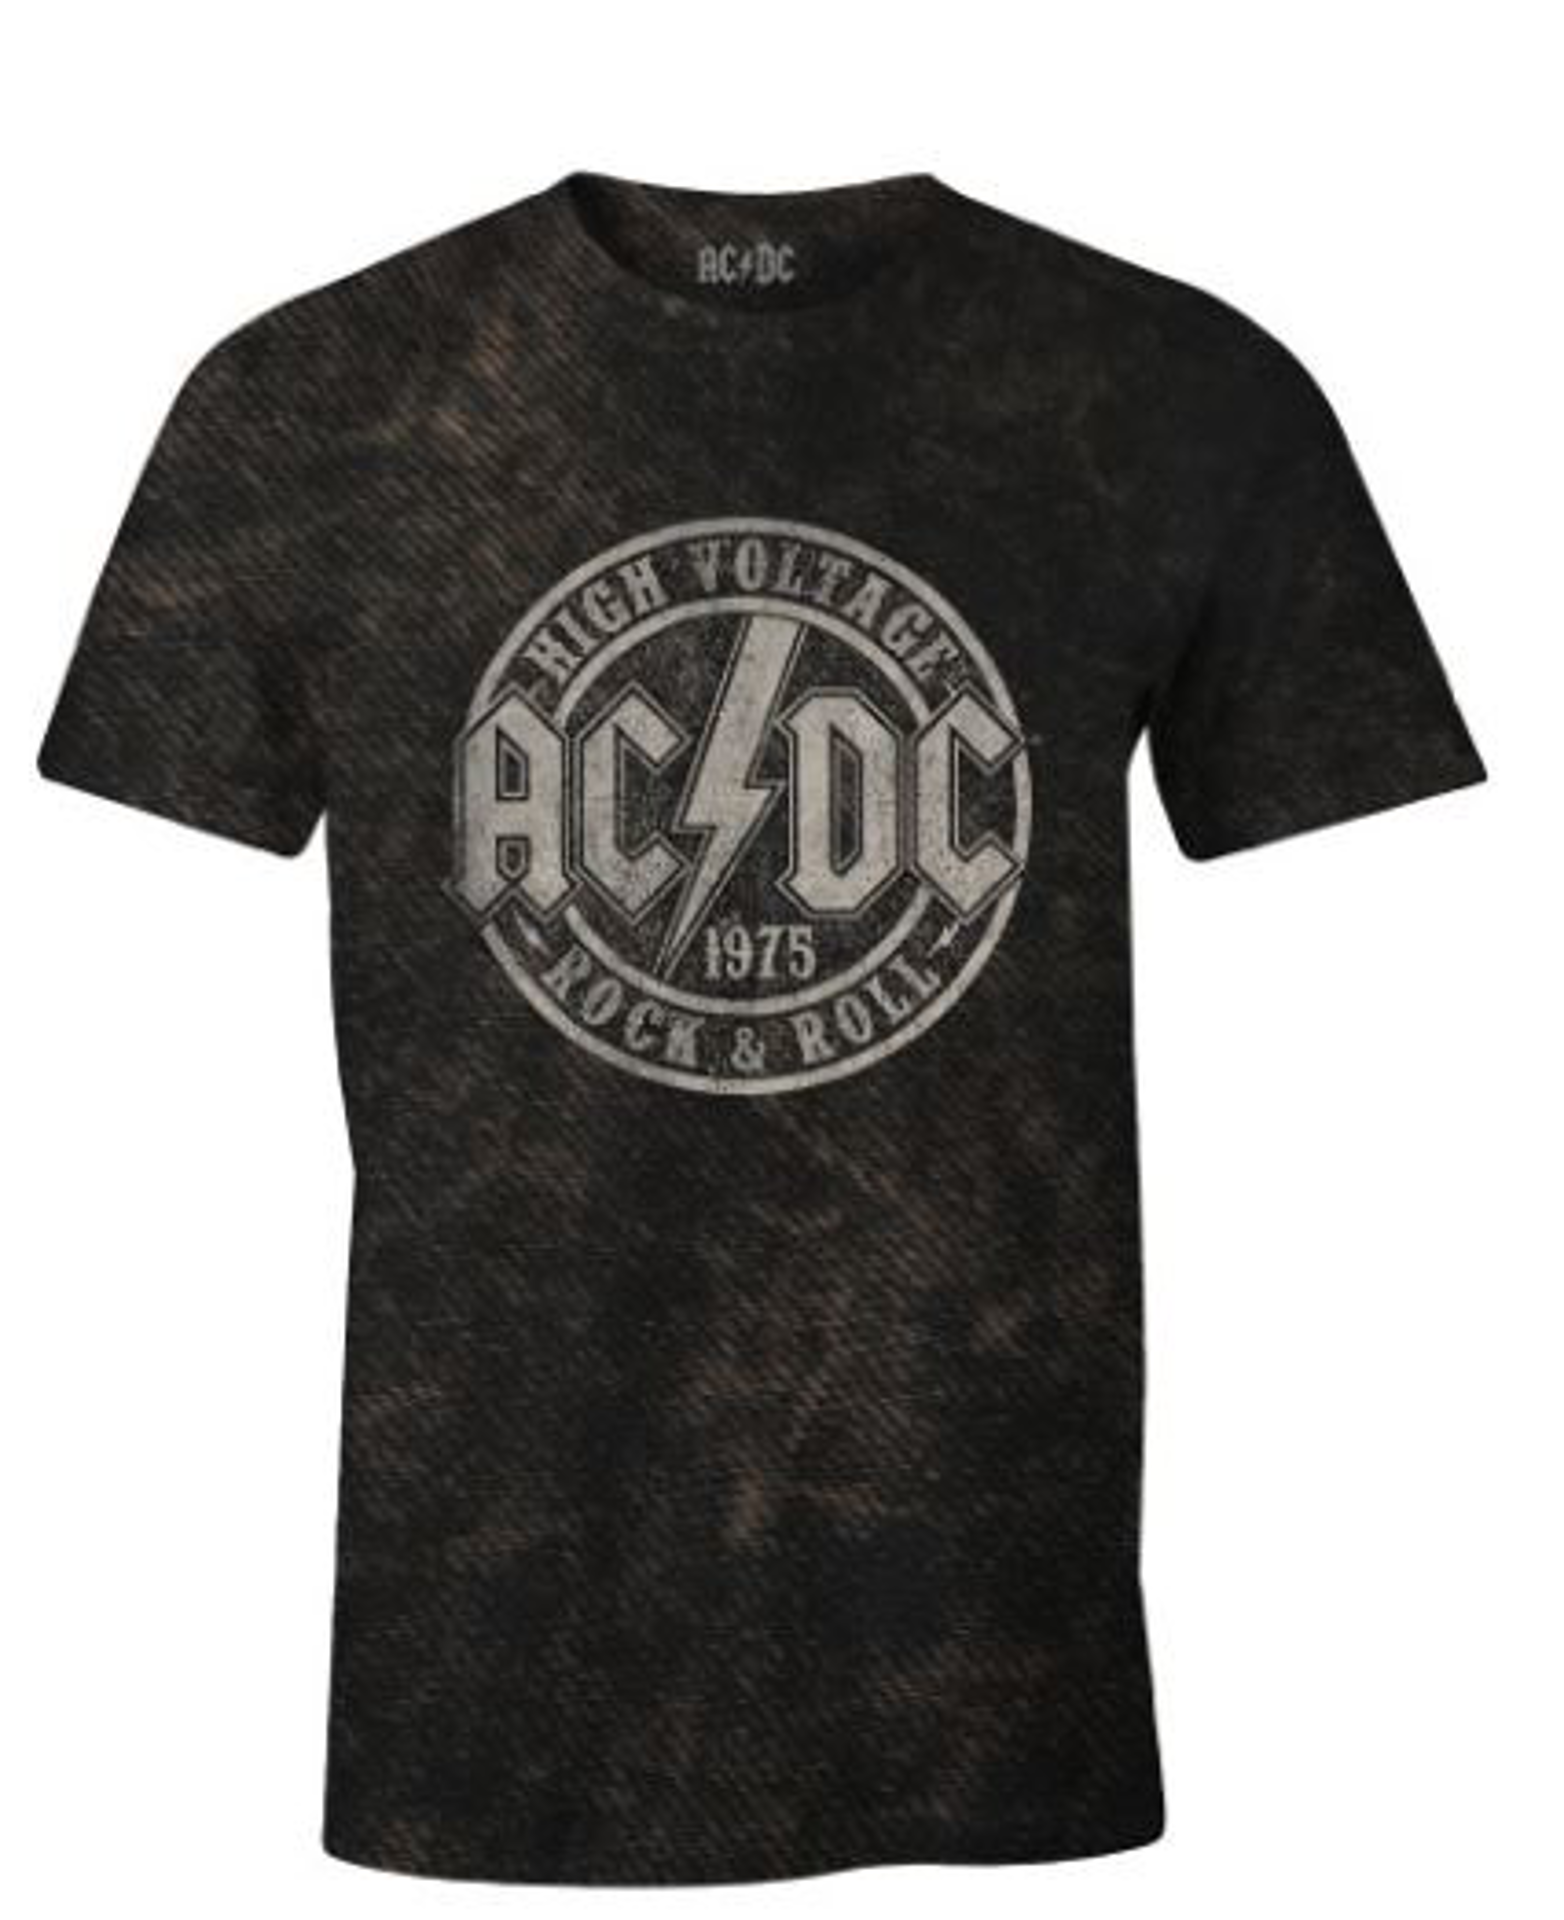 ACDC - T-shirt Noir Hommes Rock & Roll 1975 - L